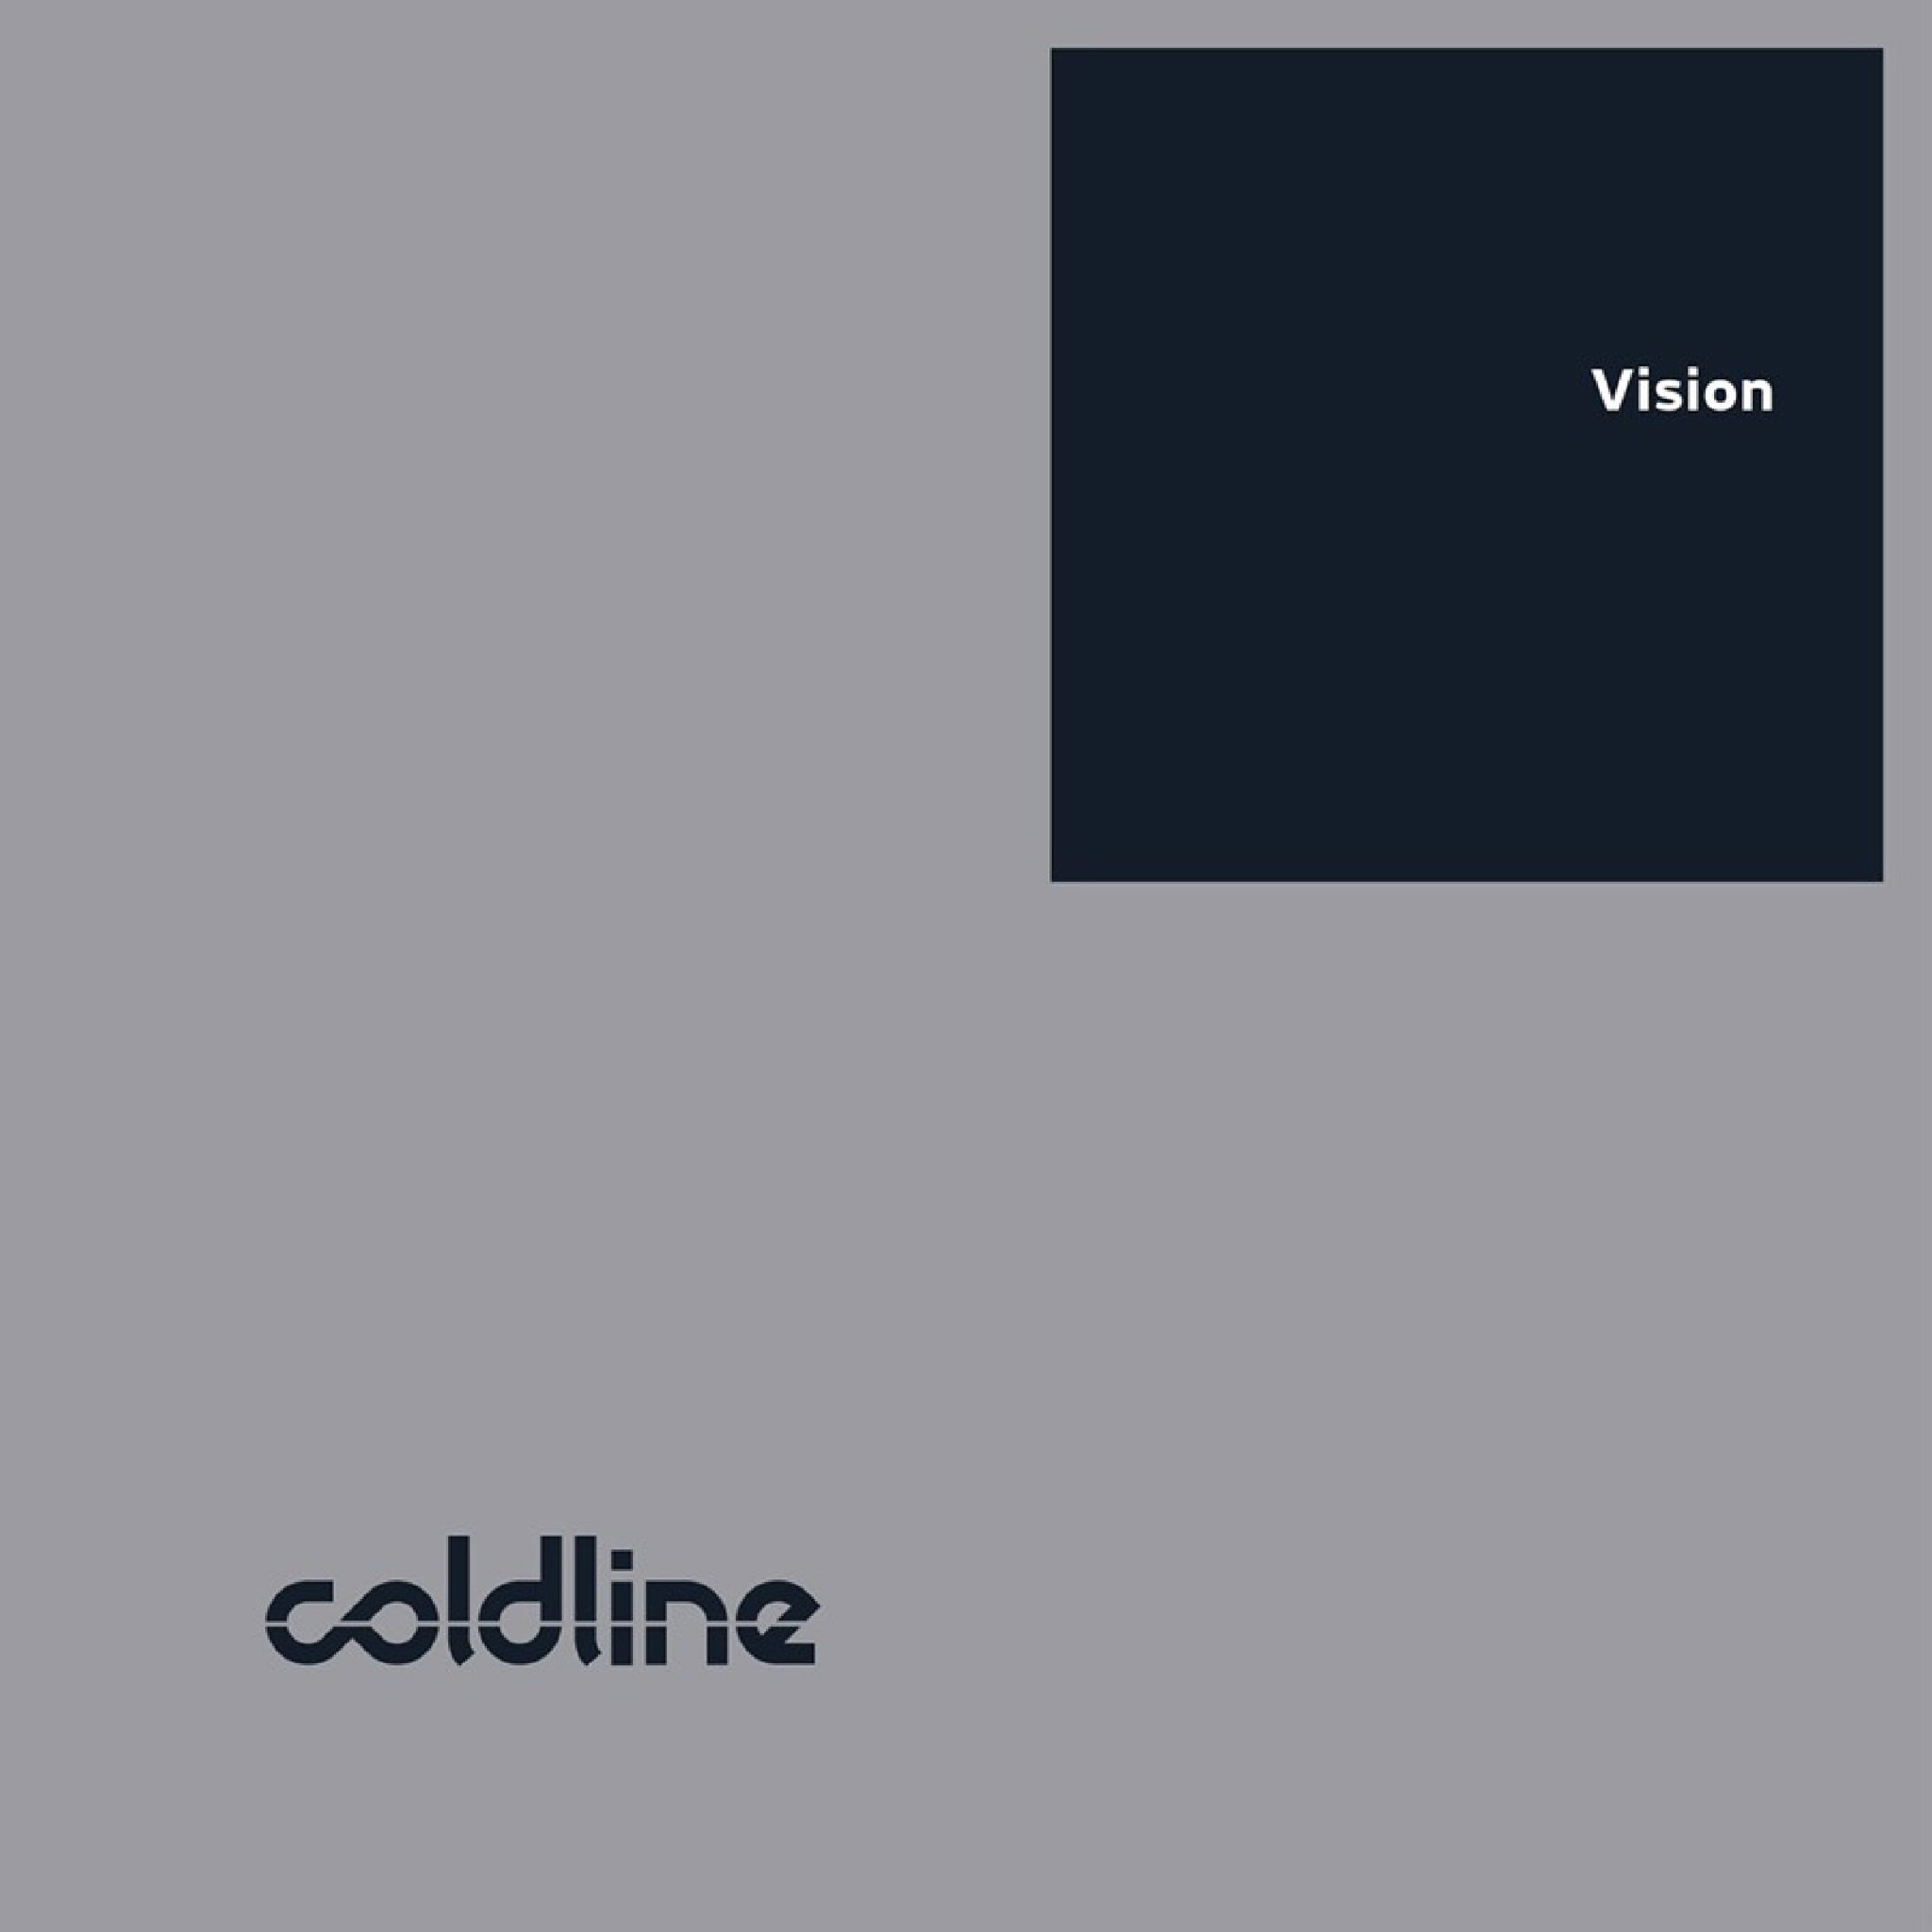 Coldline Vision